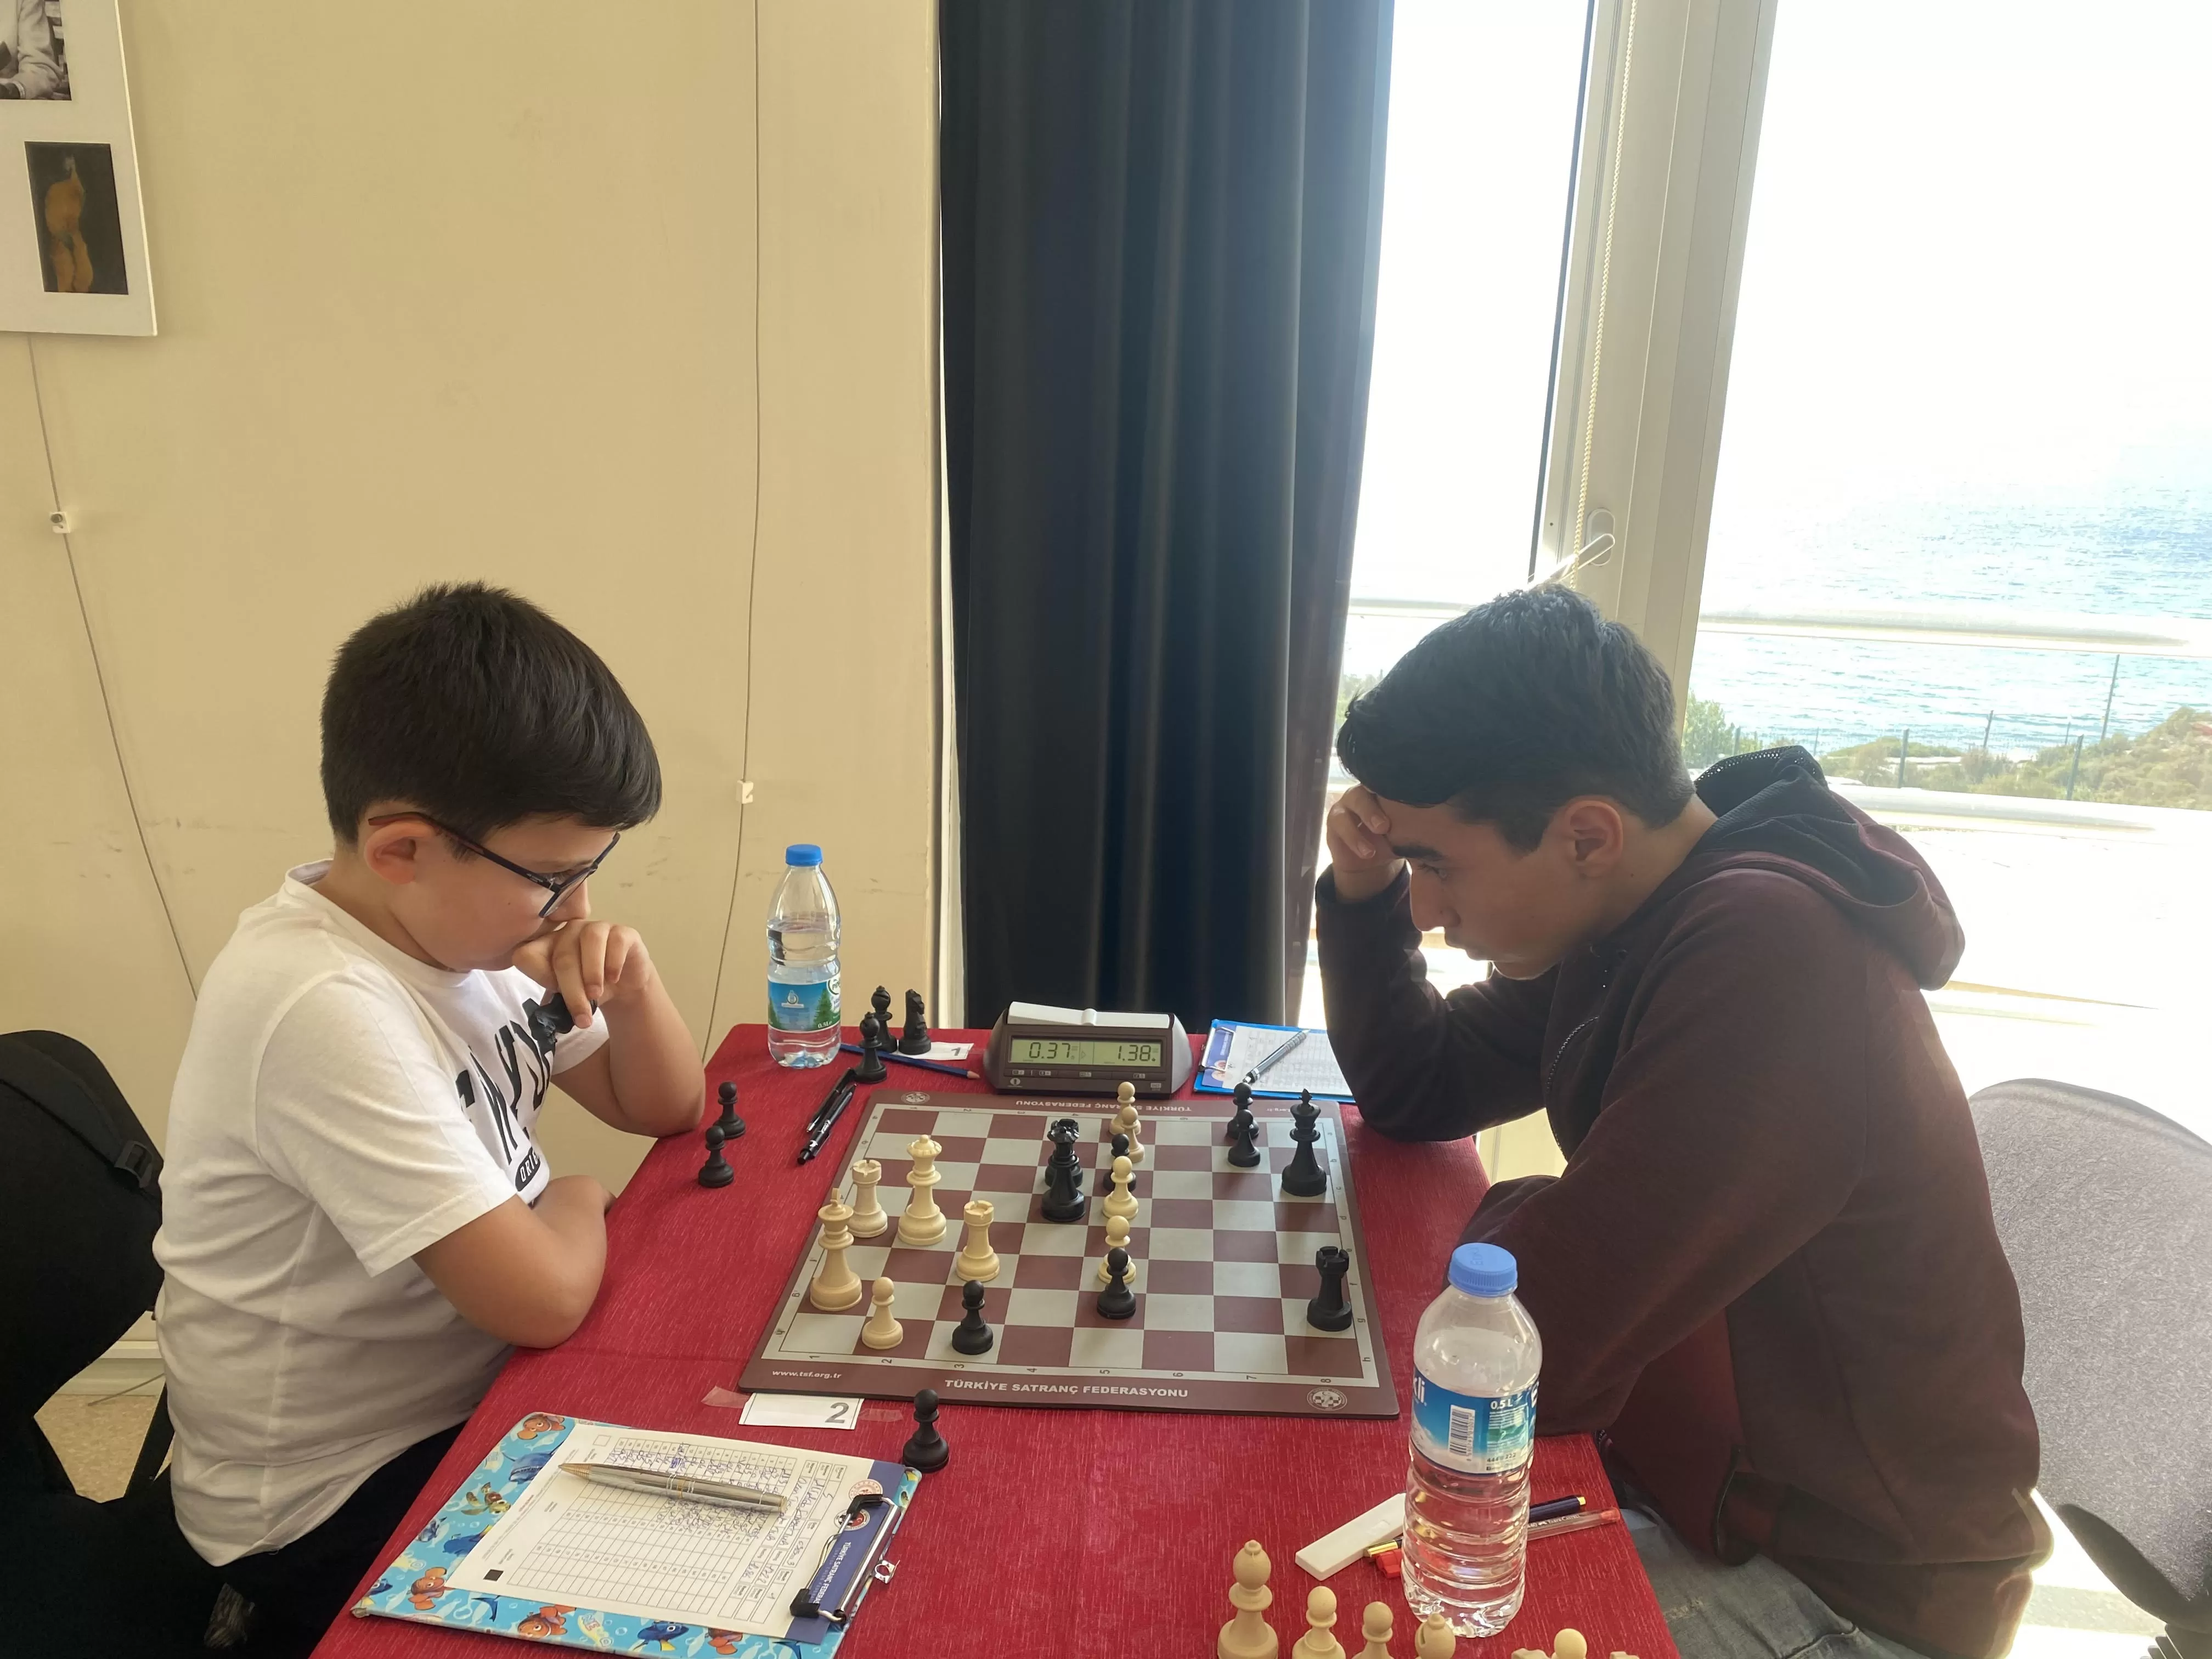 İzmir'in Seferihisar Belediyesi, 30 Ağustos Zafer Bayramı’nı düzenlediği satranç turnuvasıyla taçlandırdı. 